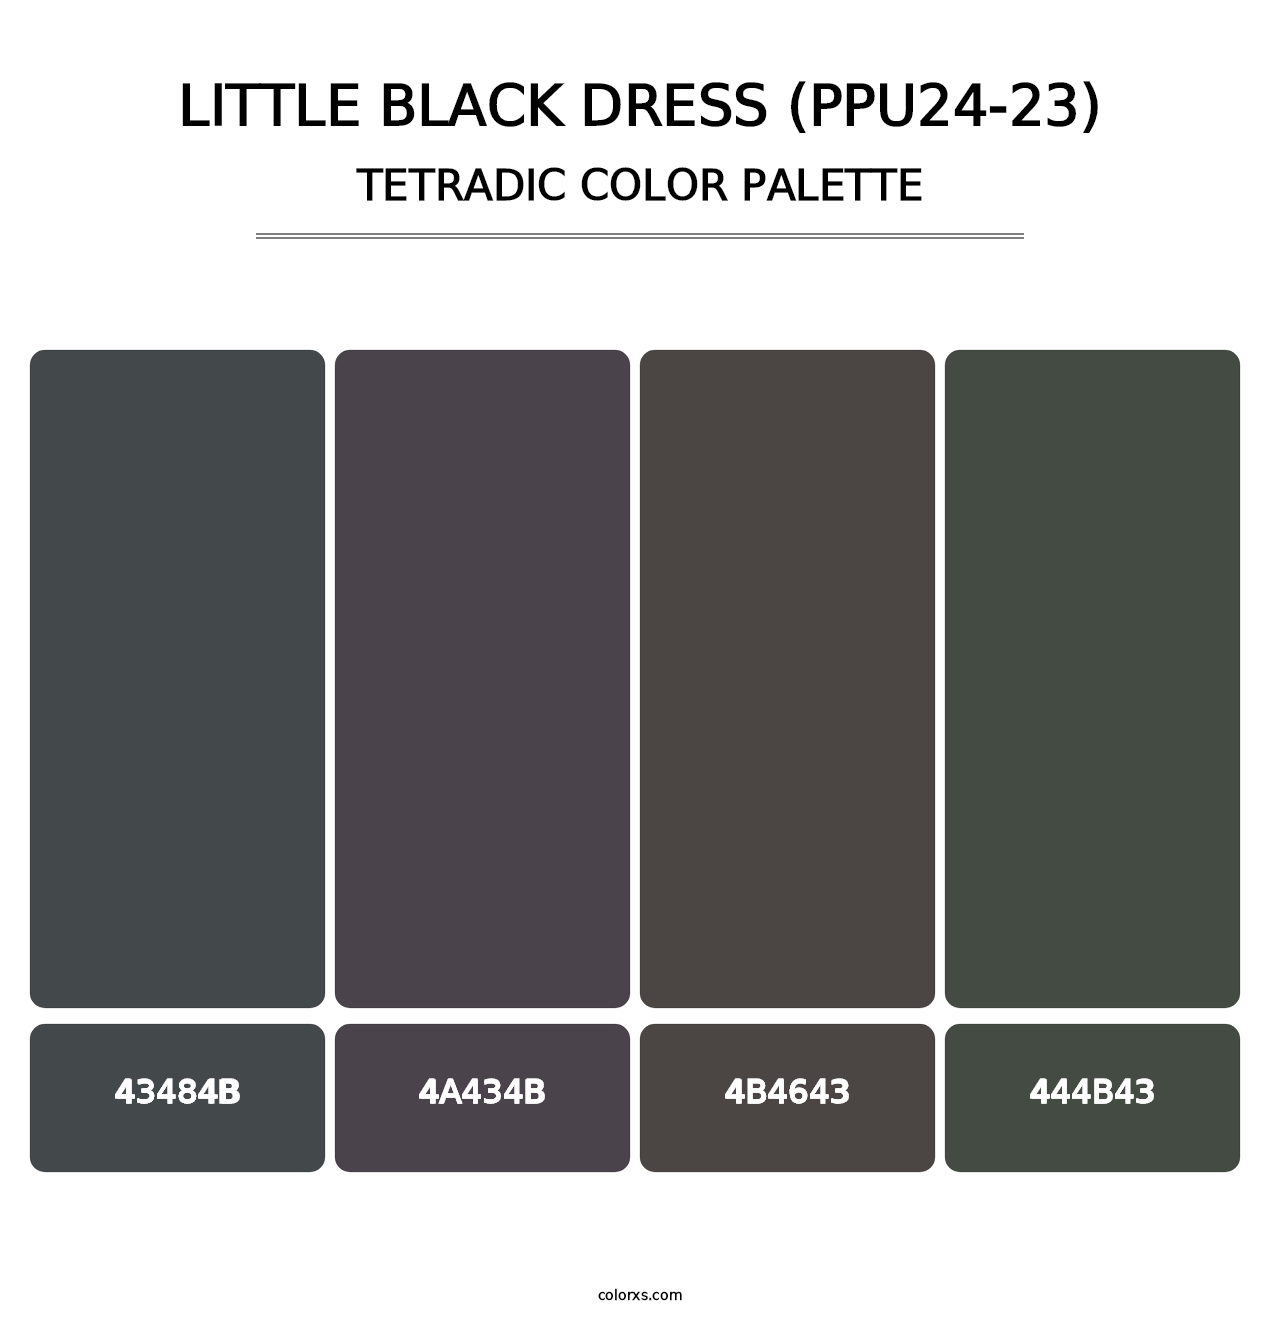 Little Black Dress (PPU24-23) - Tetradic Color Palette